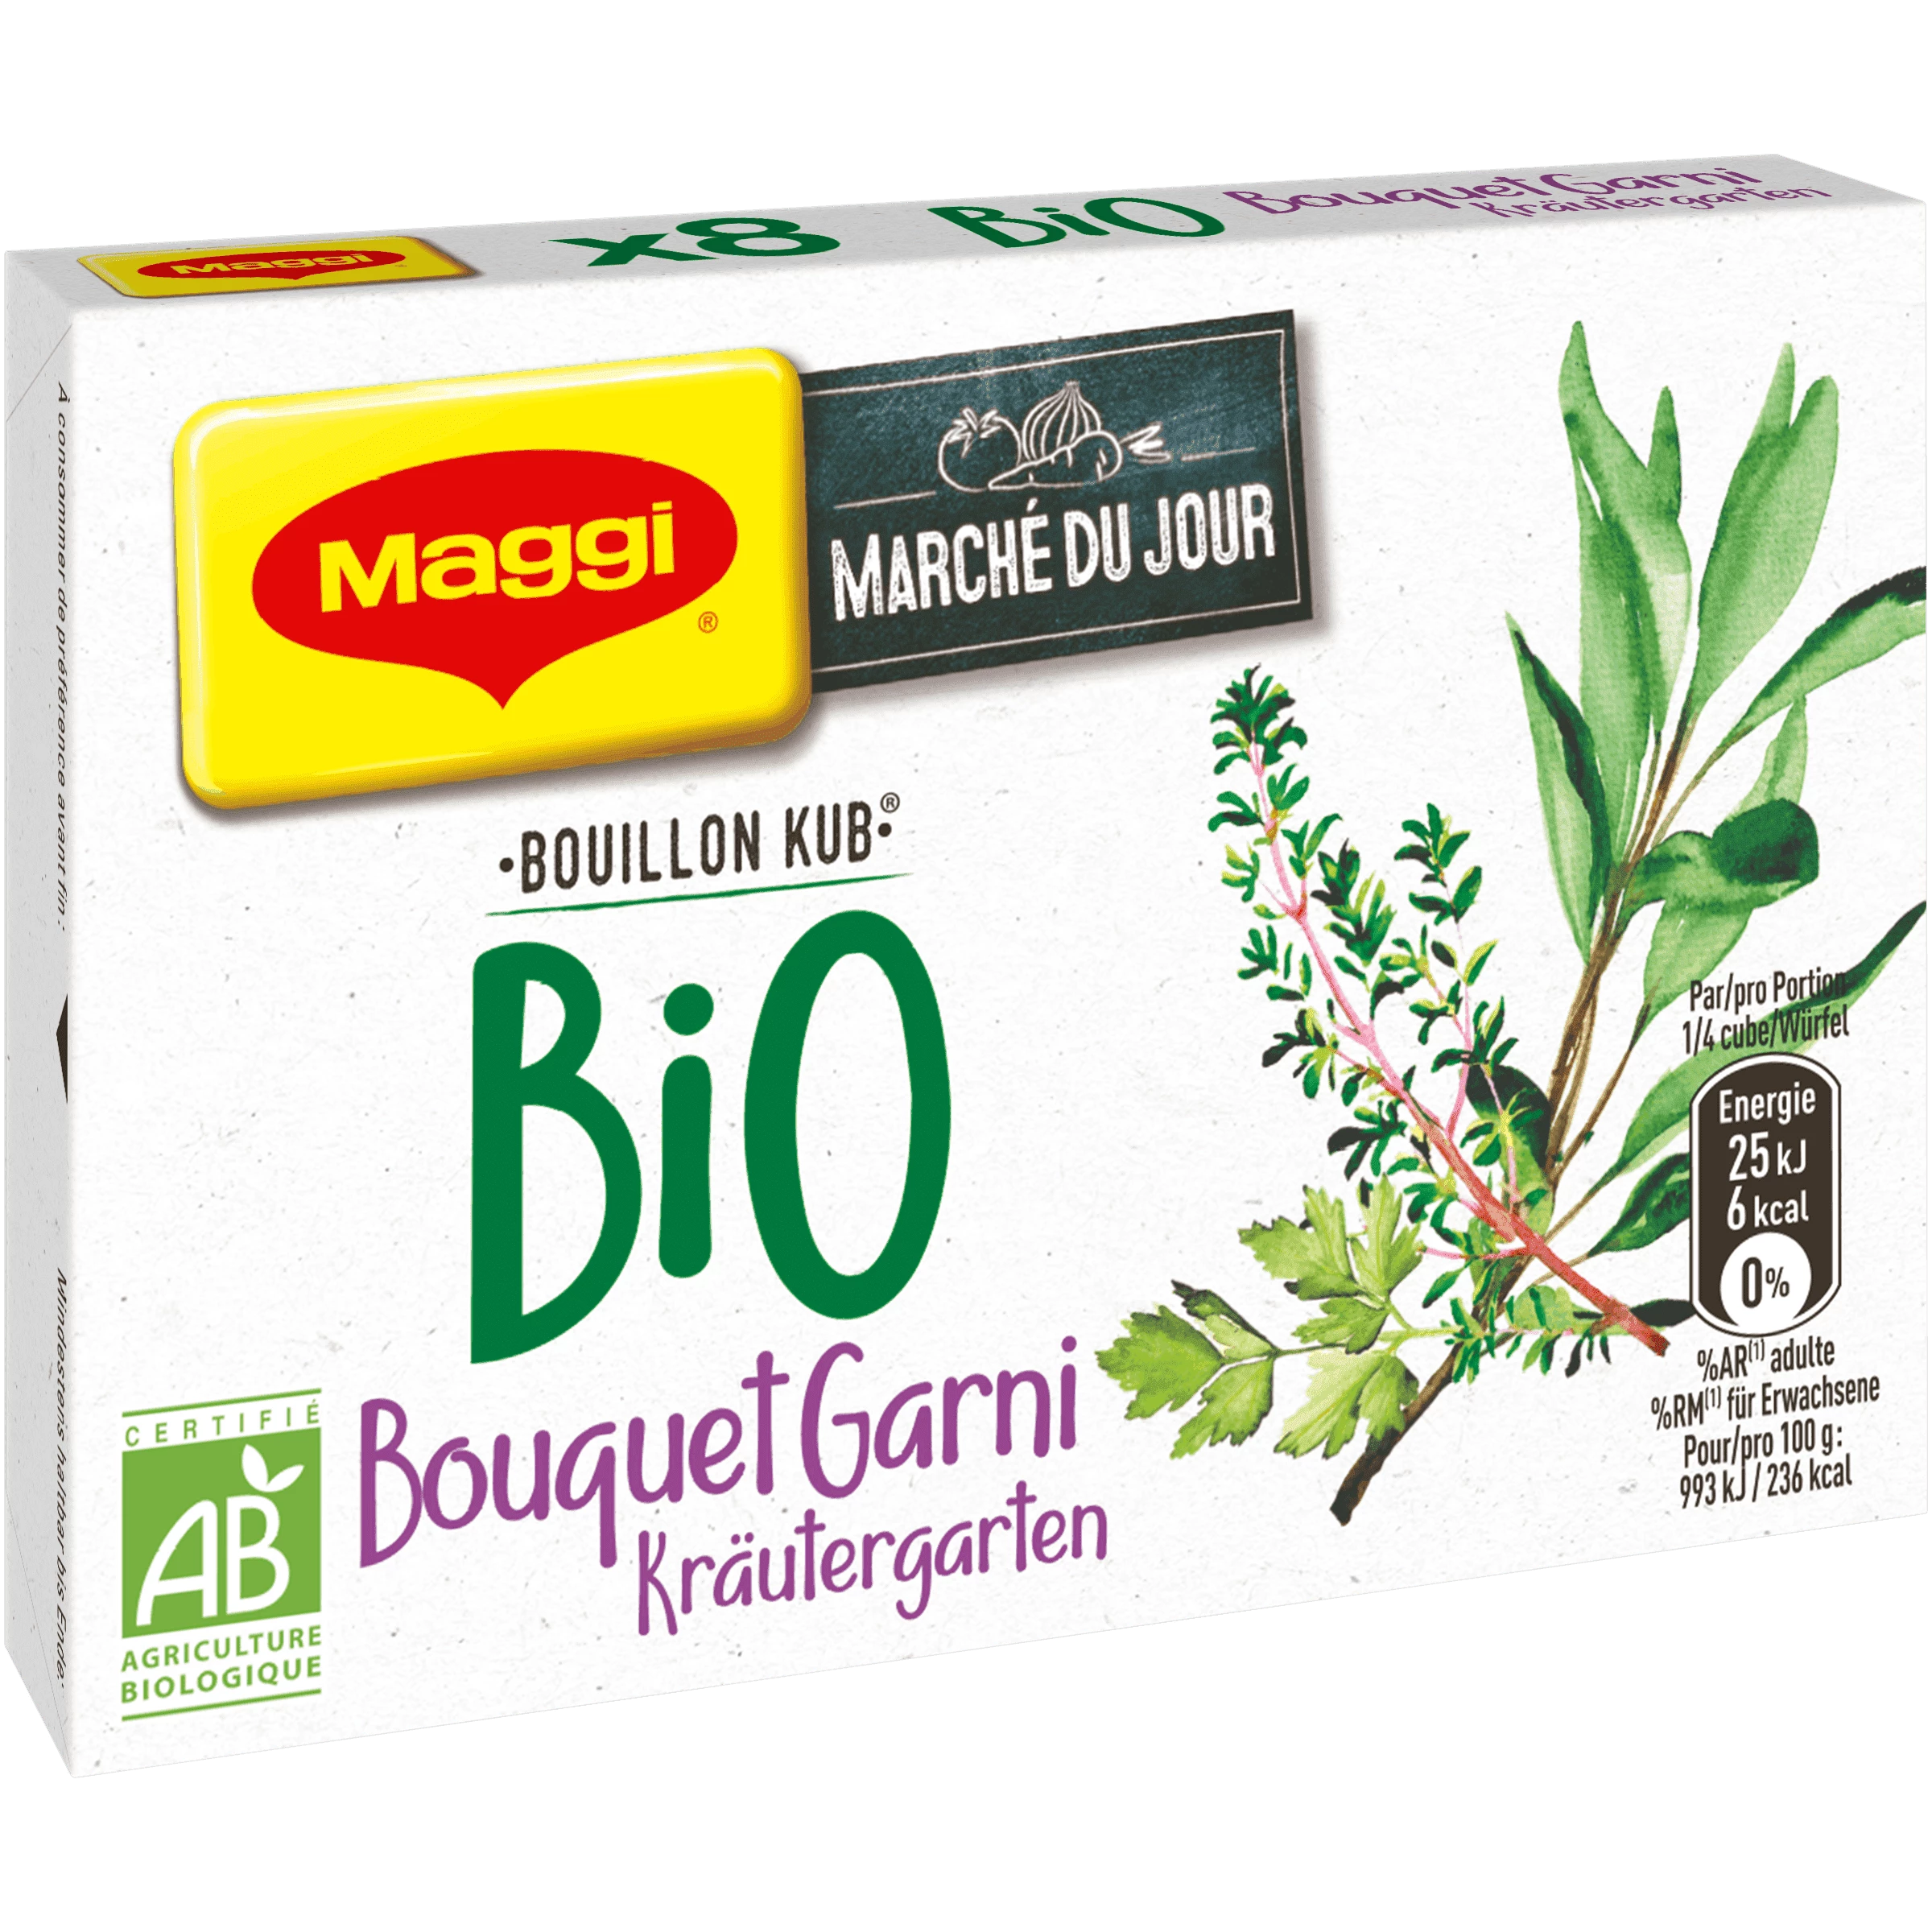 Organic kub bouquet garni broth x8 - MAGGI